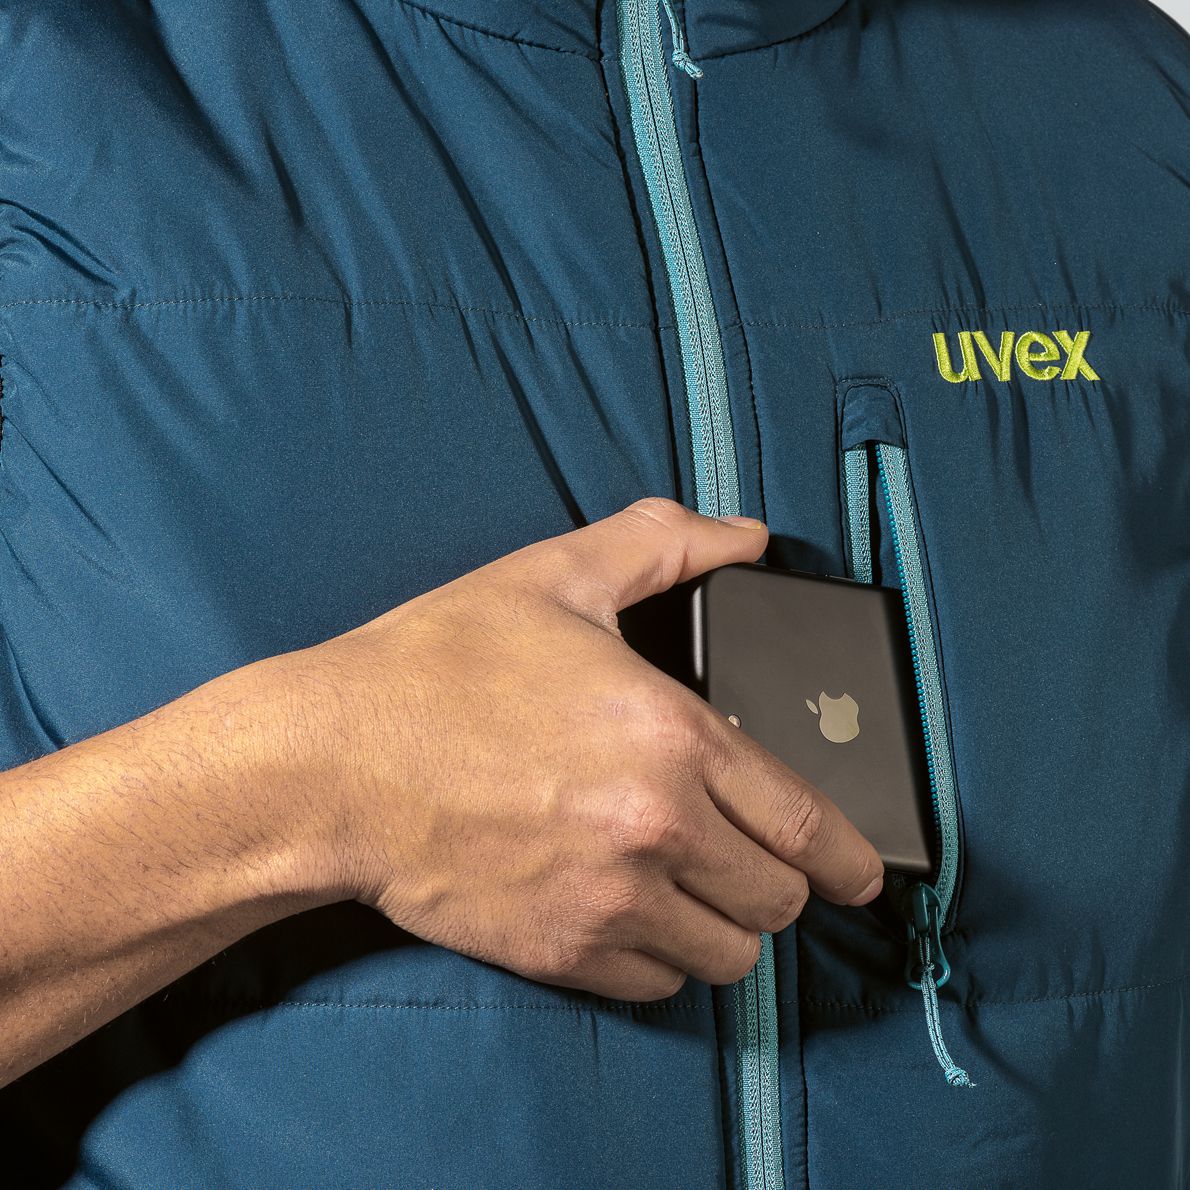 ABVERKAUF: uvex K26 89449 Damen-Weste - Sicherheitsweste für die Arbeit - Petrol - XS